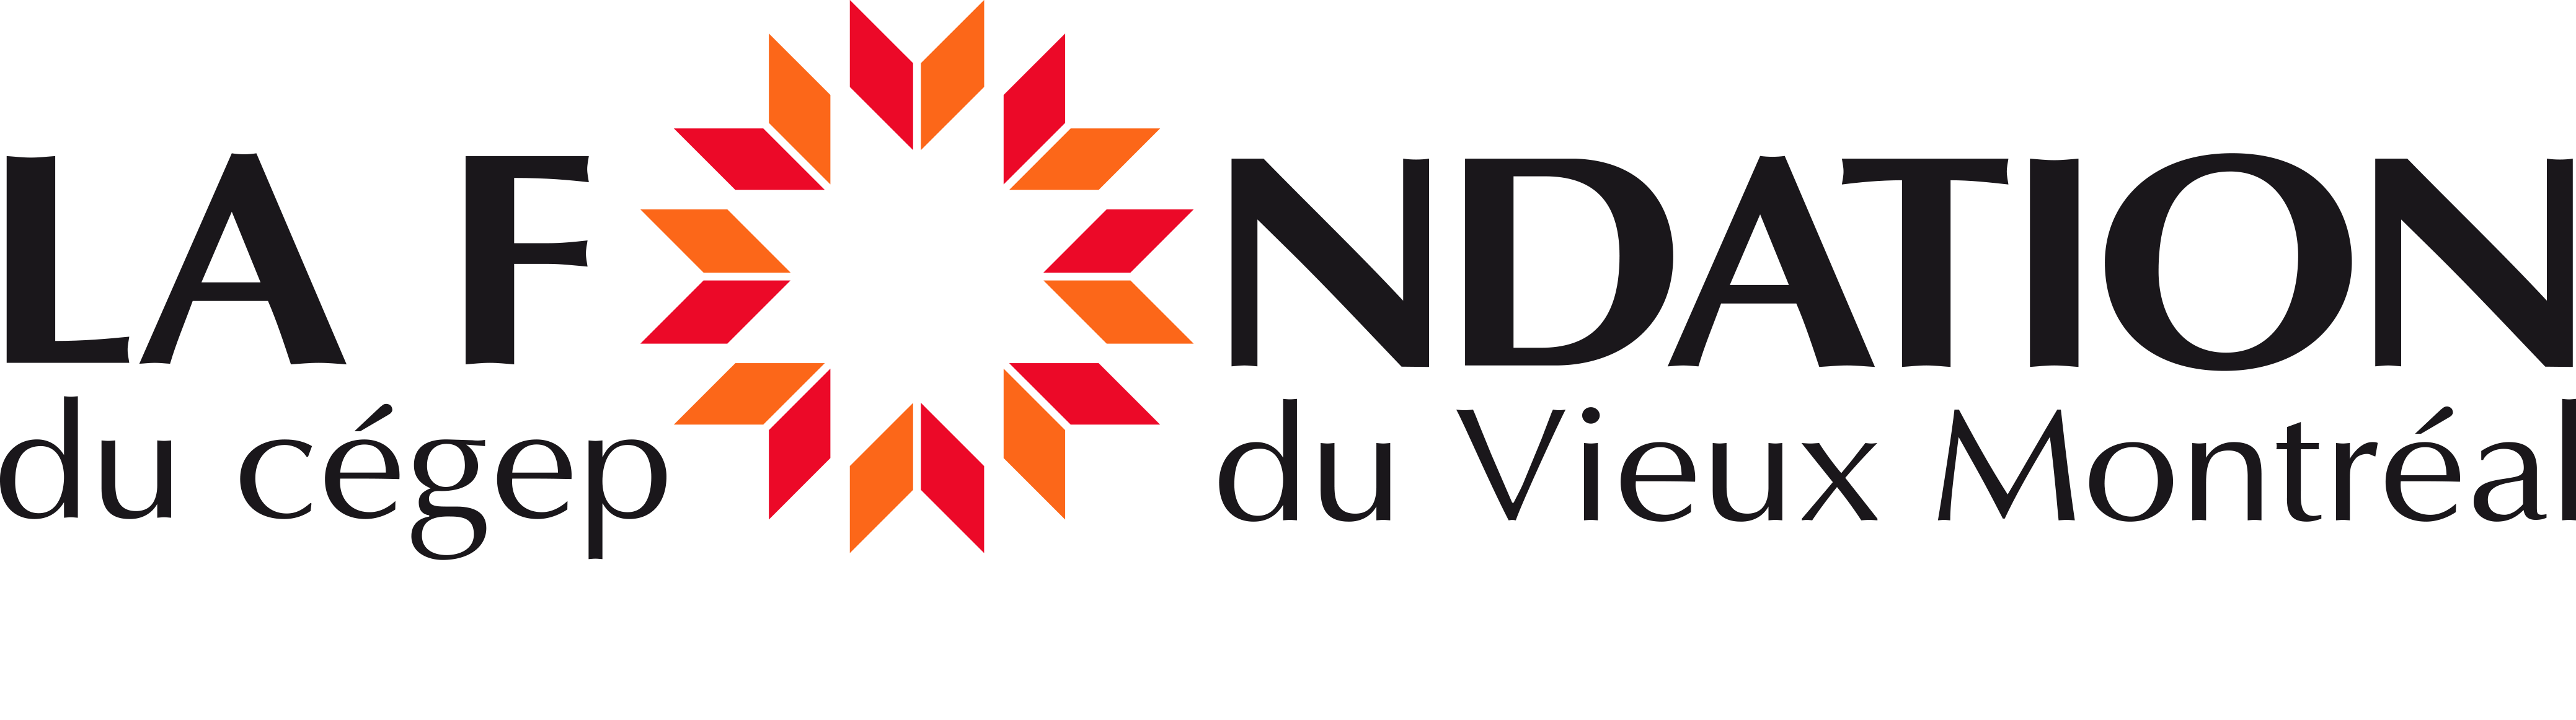 Logo Fondation du cégep du Vieux Montréal